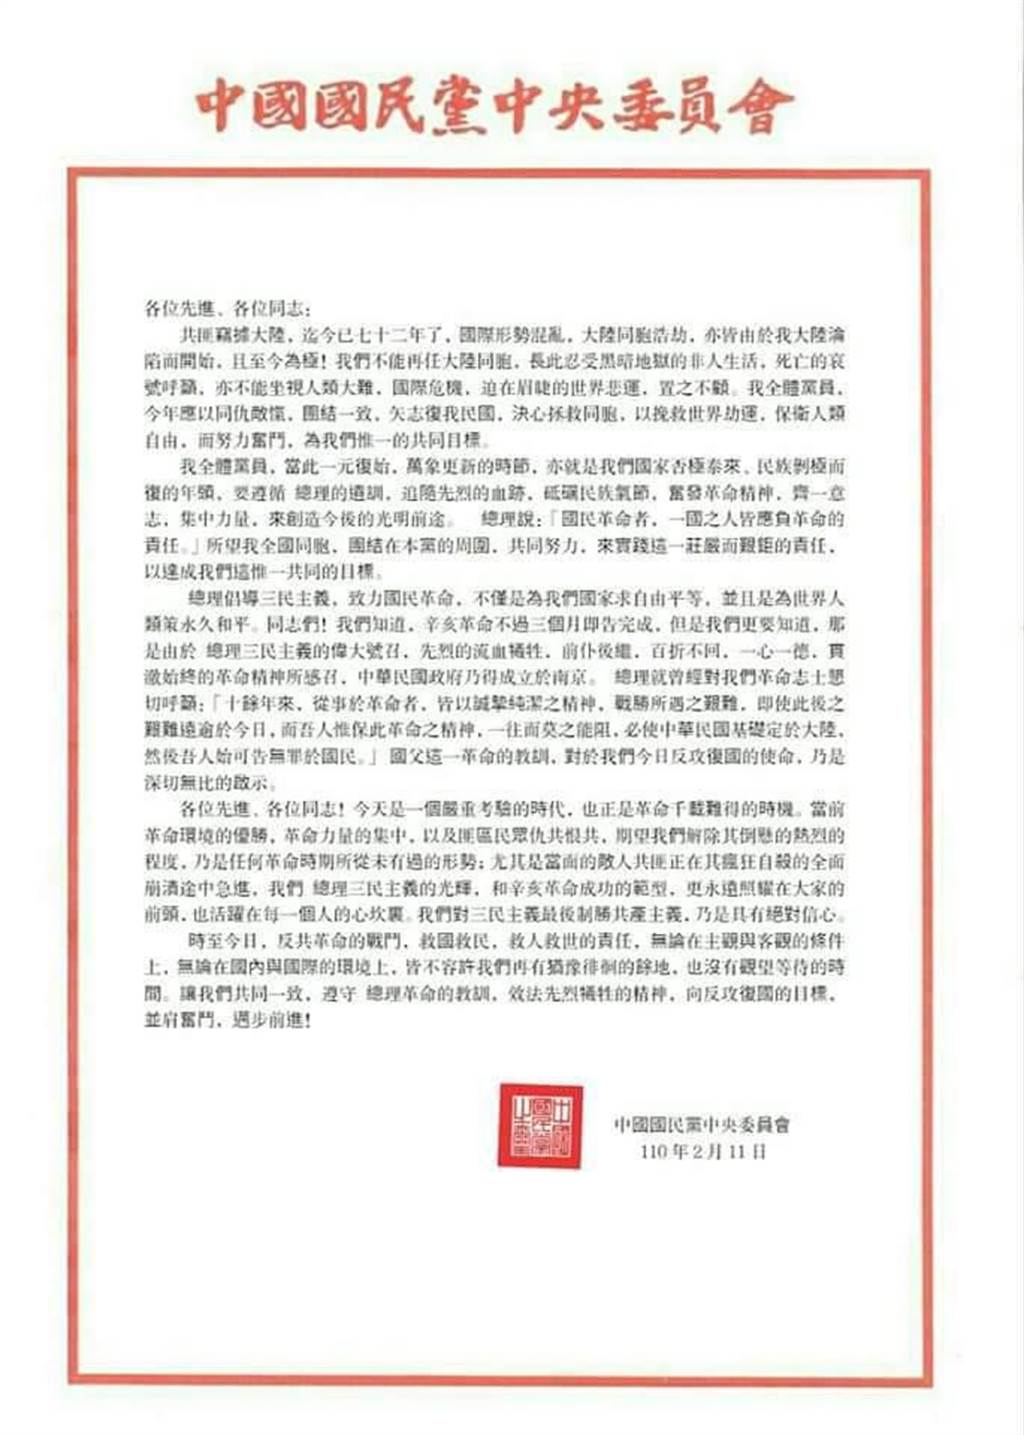 網傳｢中央委員會反攻大陸信函｣國民黨澄清假訊息遭酸:不要打臉自己